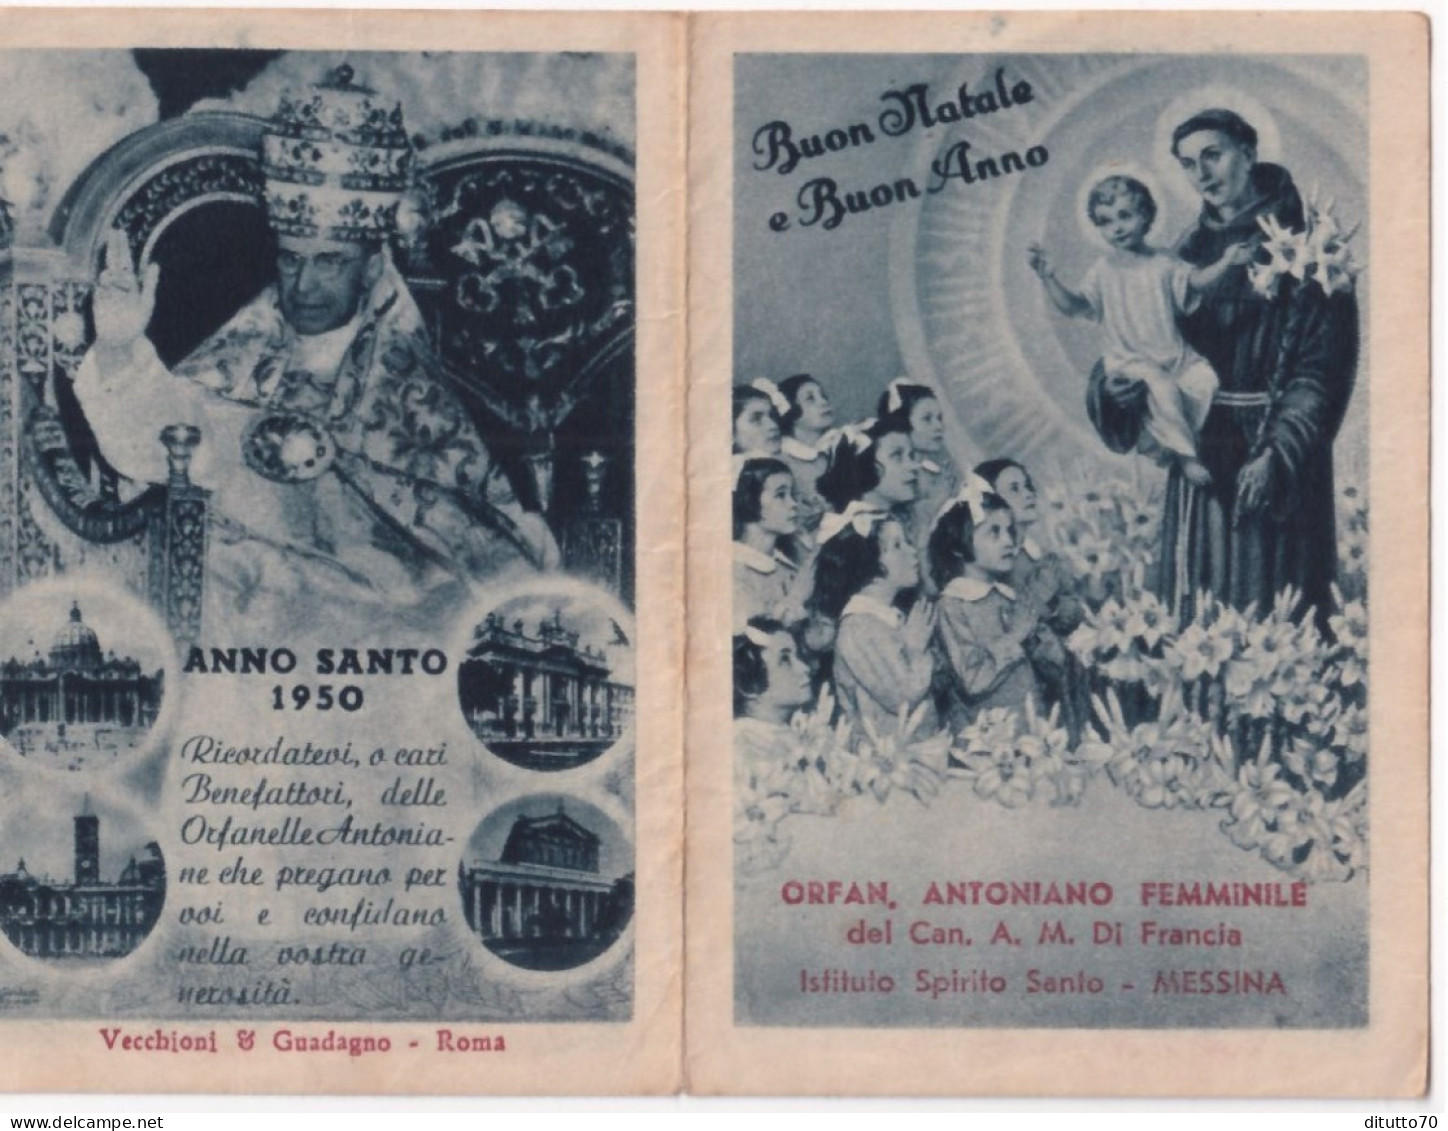 Calendarietto - Orfanotrofio Antoniano Femminile  Del Can A.m.di Francia - Messina - Anno  1950 - Small : 1941-60